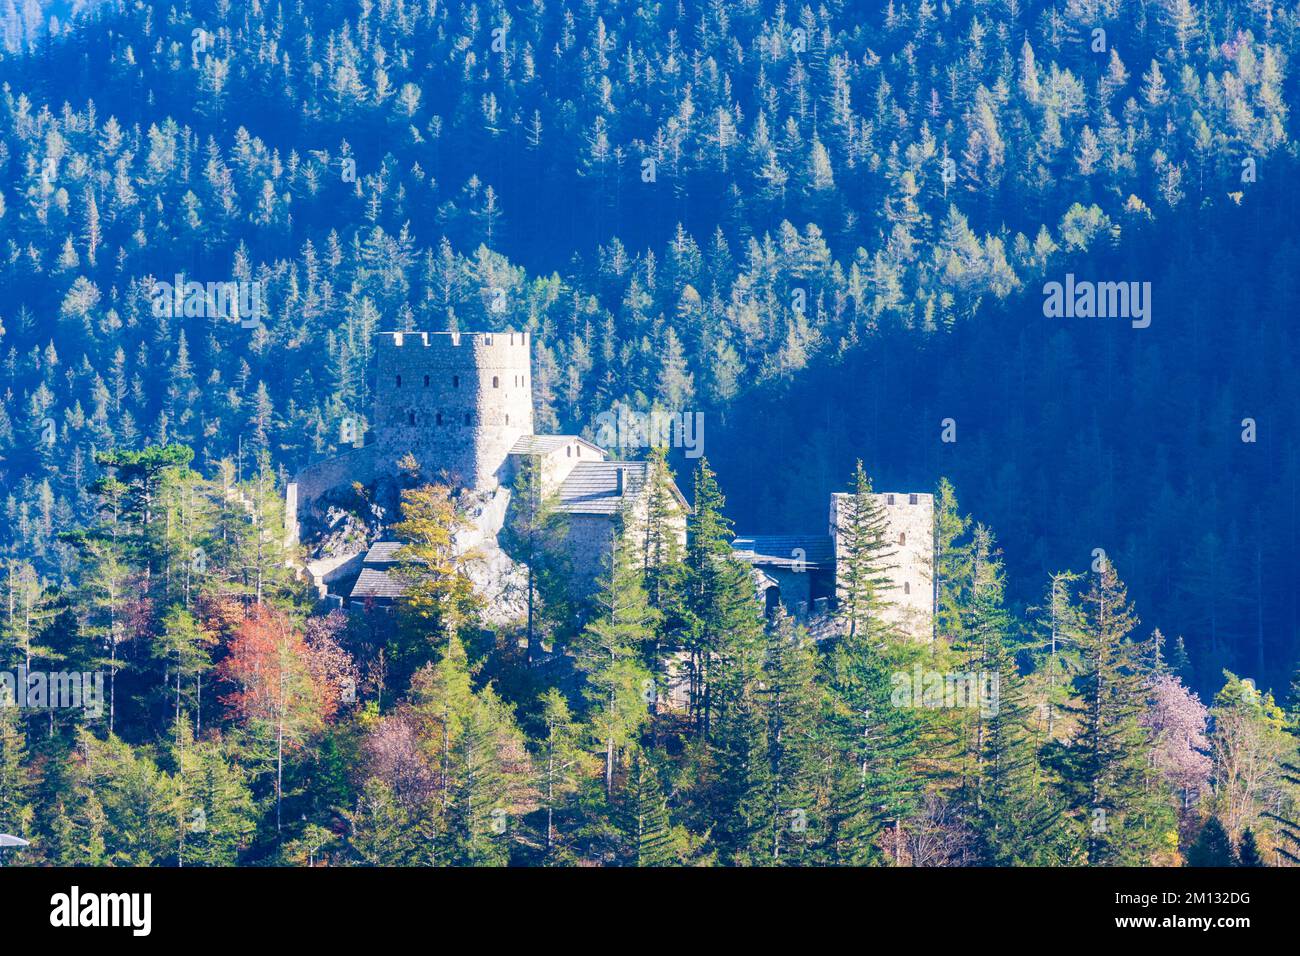 Puchberg am Schneeberg, Losenheim Castle in Vienna Alps (Wiener Alpen), Lower Austria, Austria Stock Photo